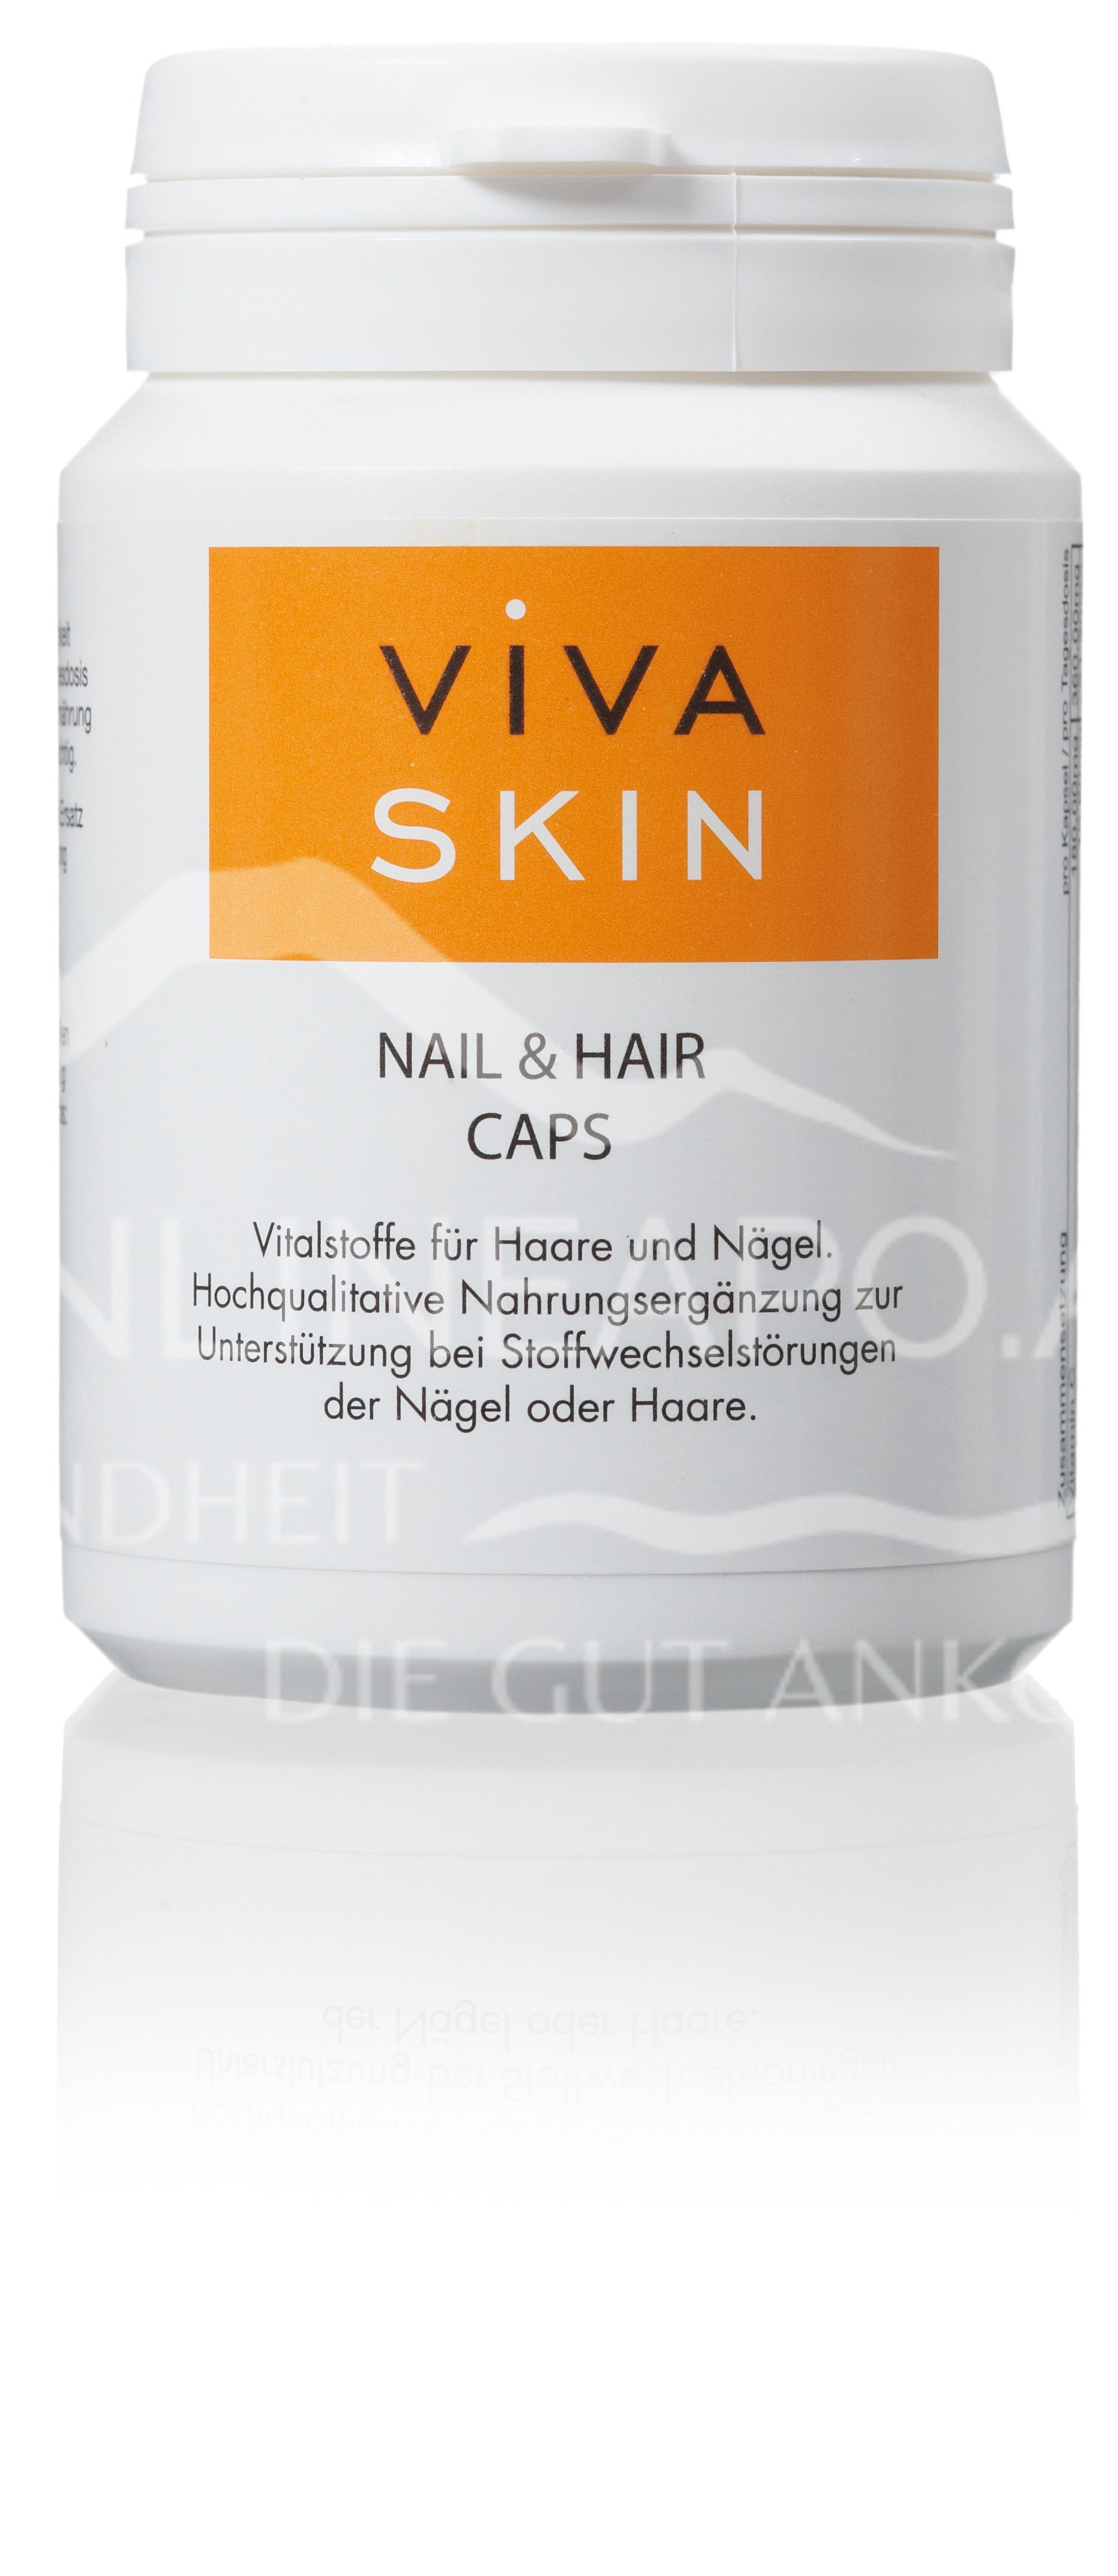 Viva Skin Nail & Hair Caps Kapseln